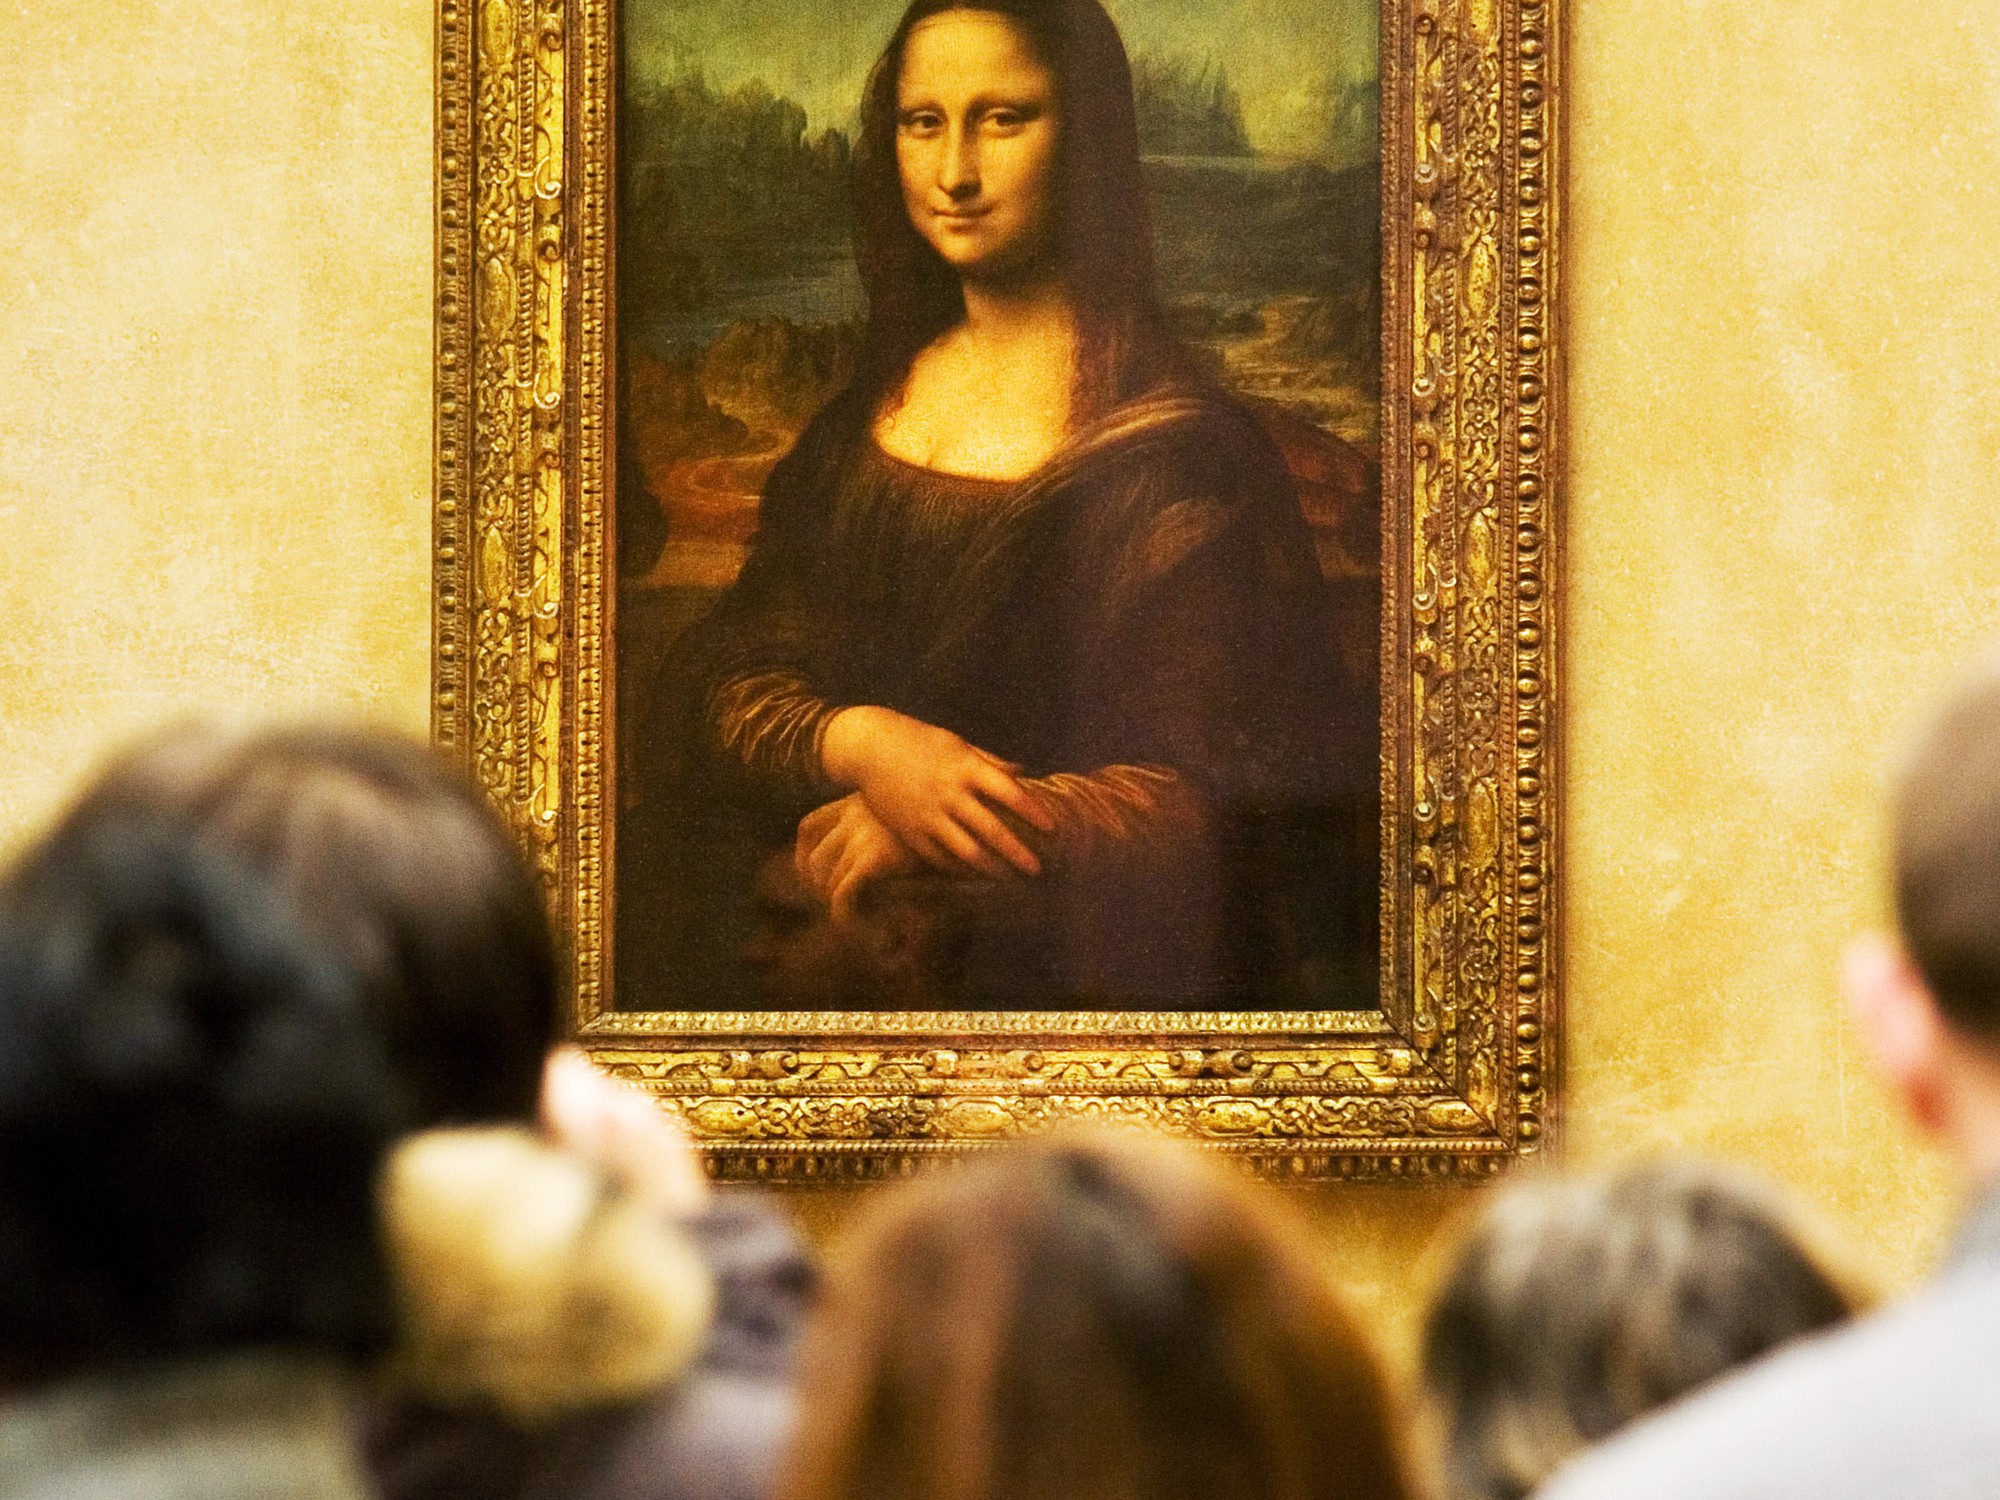 Hiệu ứng Mona Lisa đang trở thành một trong những trào lưu tạo ảnh độc đáo trên mạng xã hội. Hãy xem tác phẩm sống động và tìm hiểu cách tạo hiệu ứng độc đáo này một cách dễ dàng.